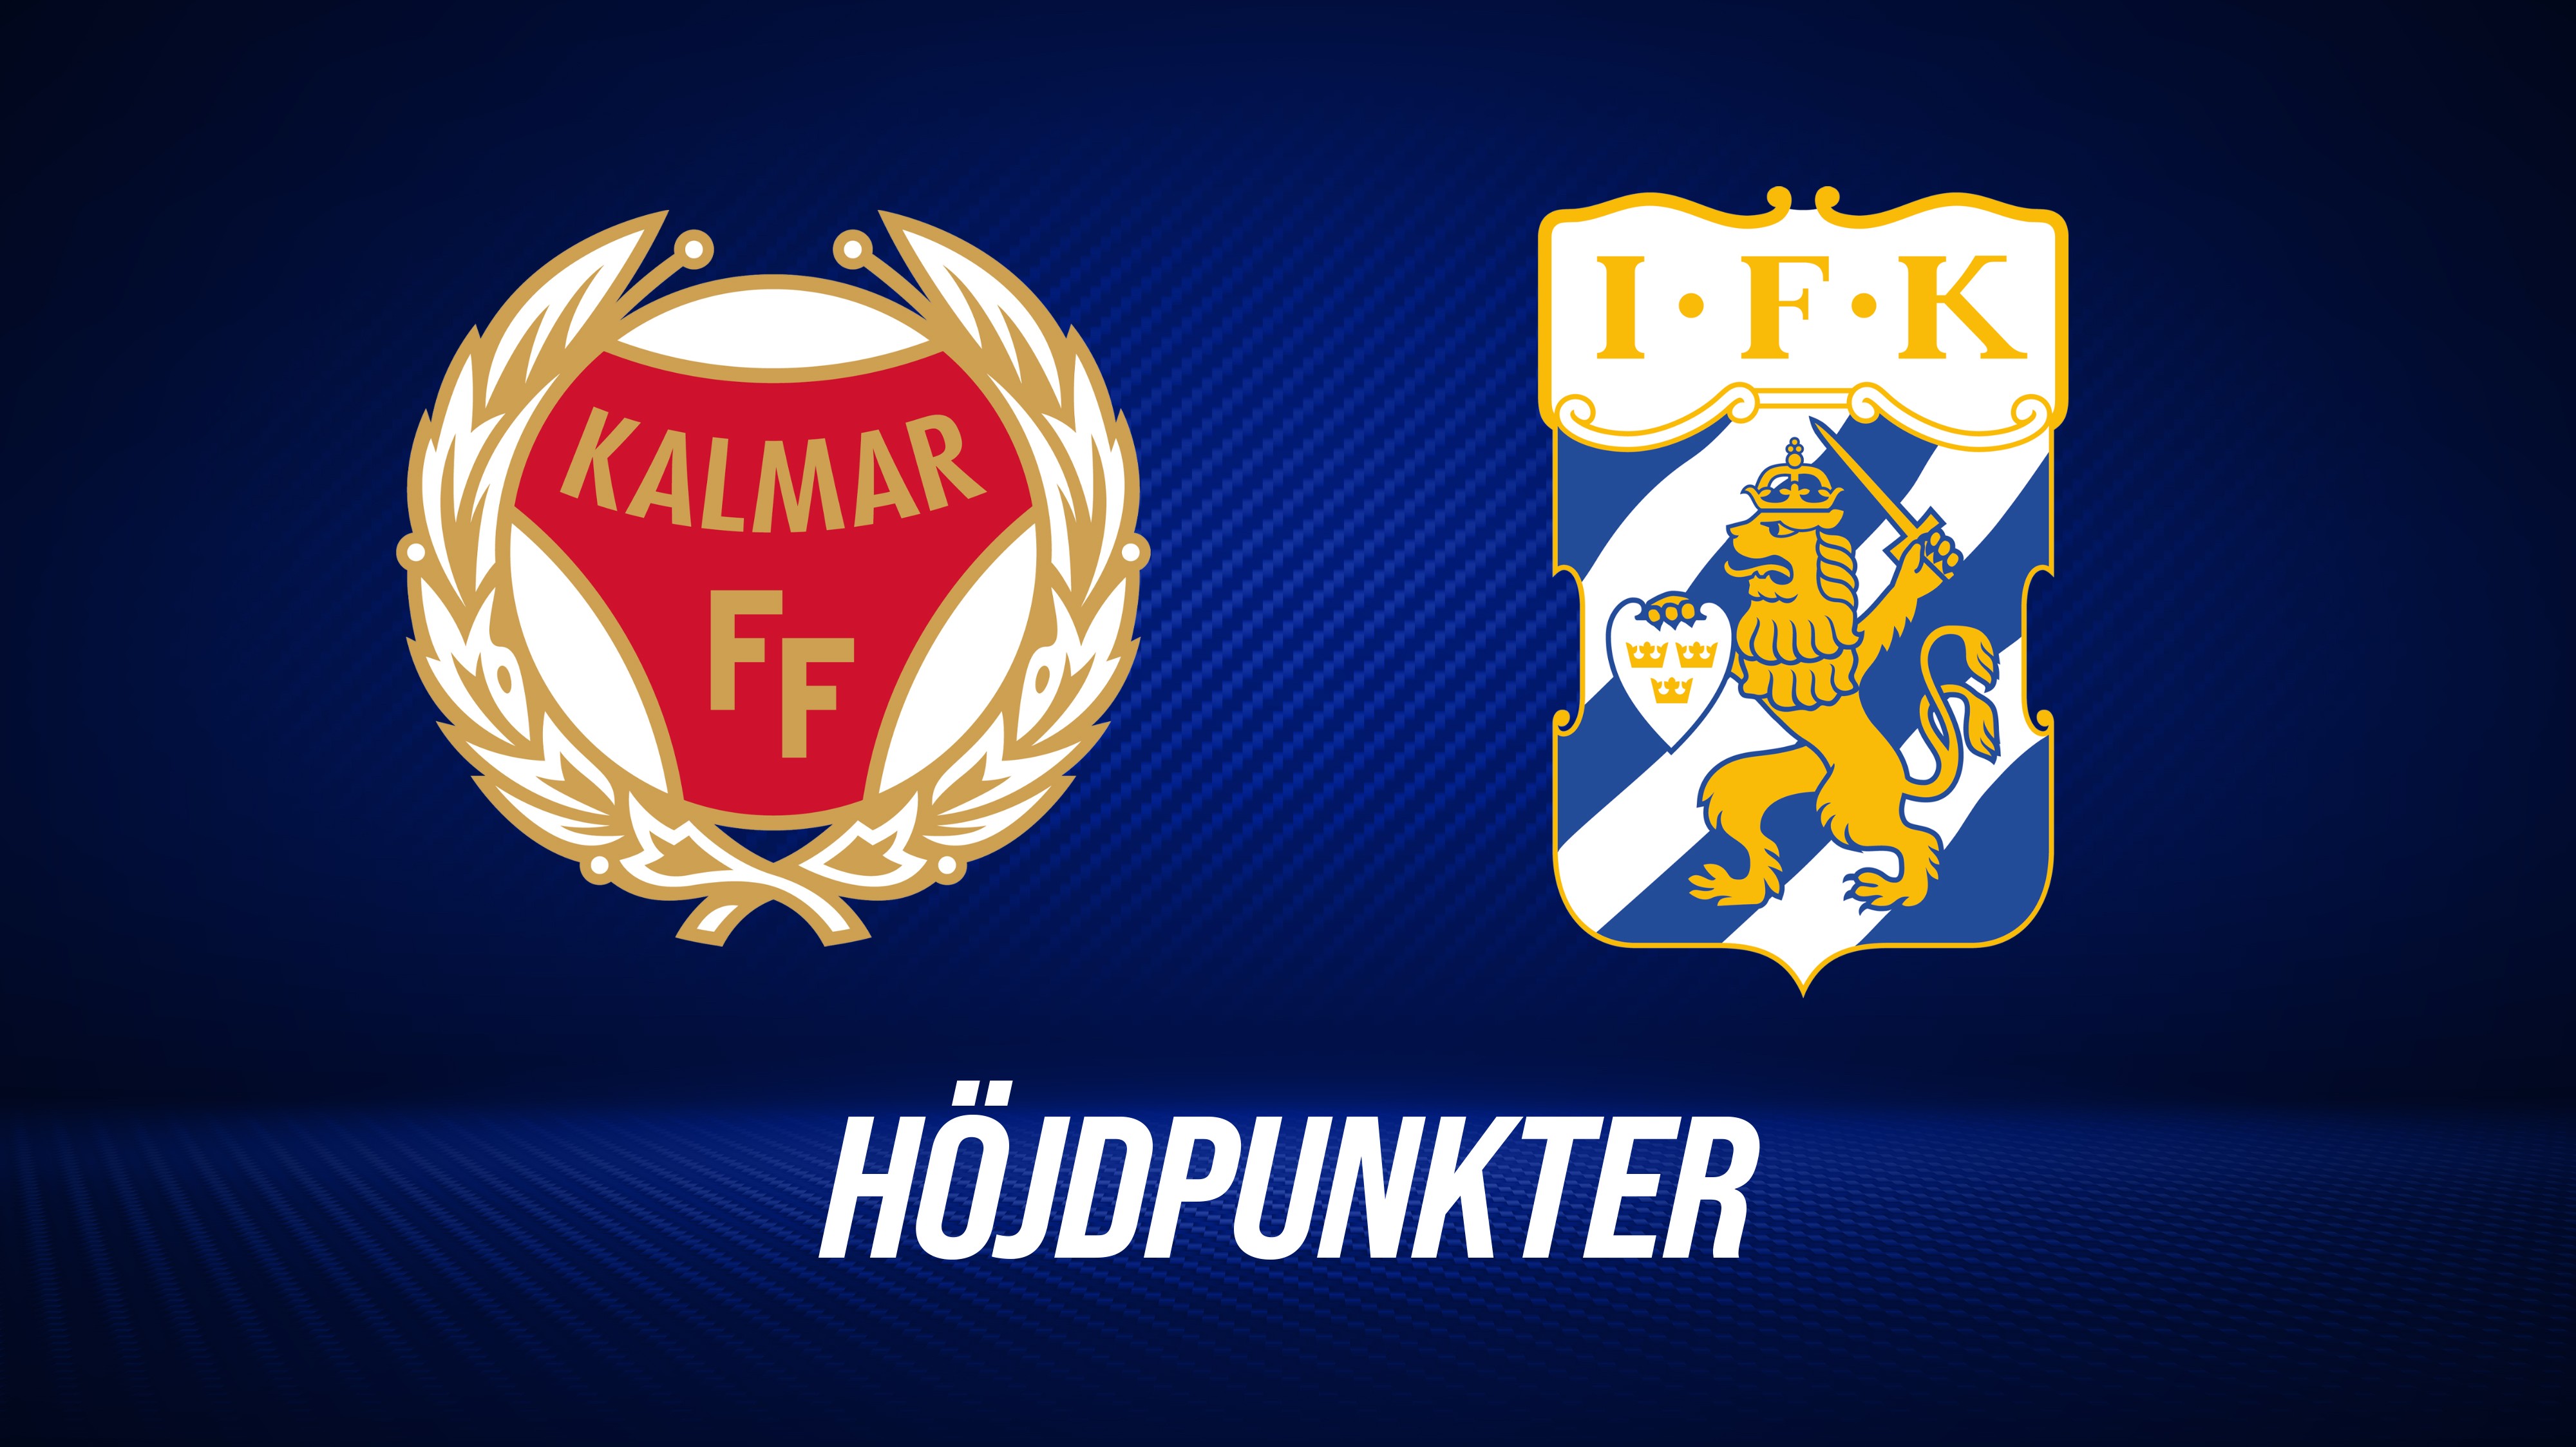 Höjdpunkter: Kalmar FF - IFK Göteborg